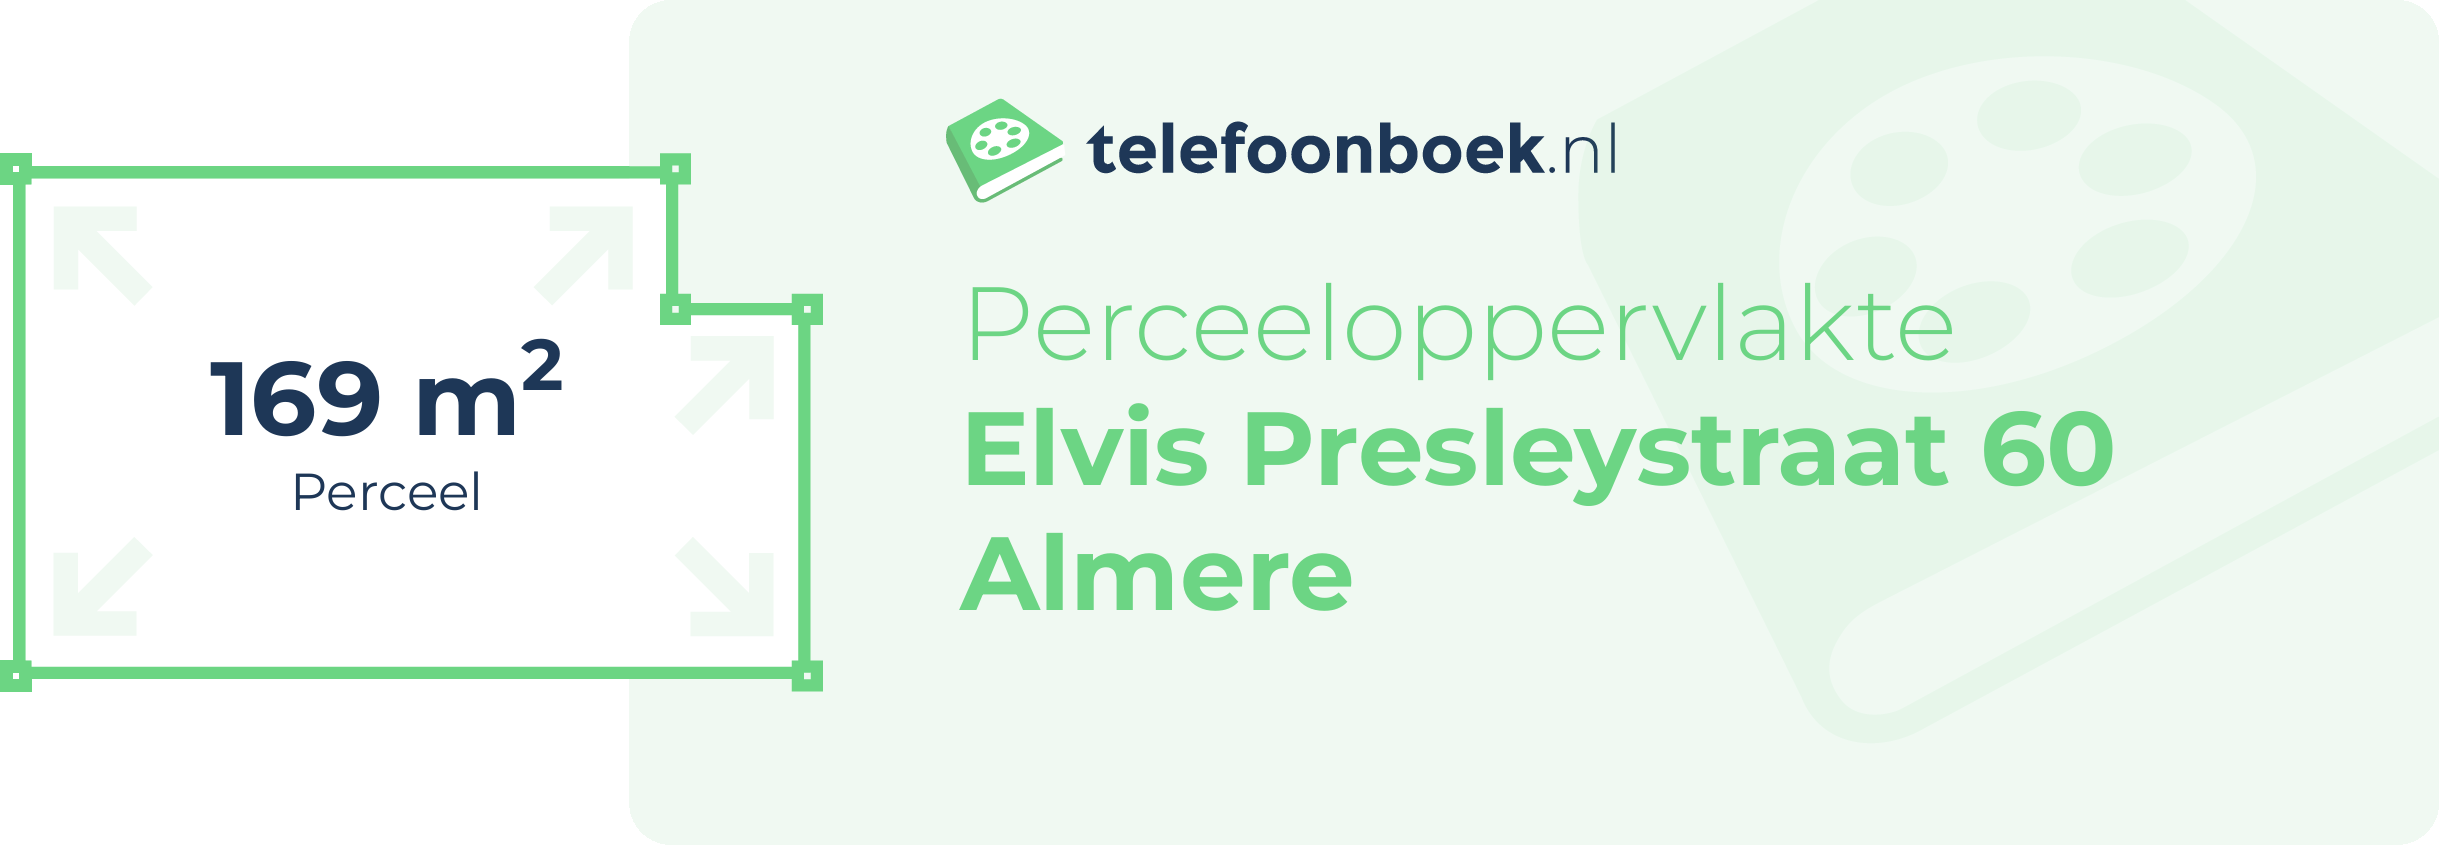 Perceeloppervlakte Elvis Presleystraat 60 Almere